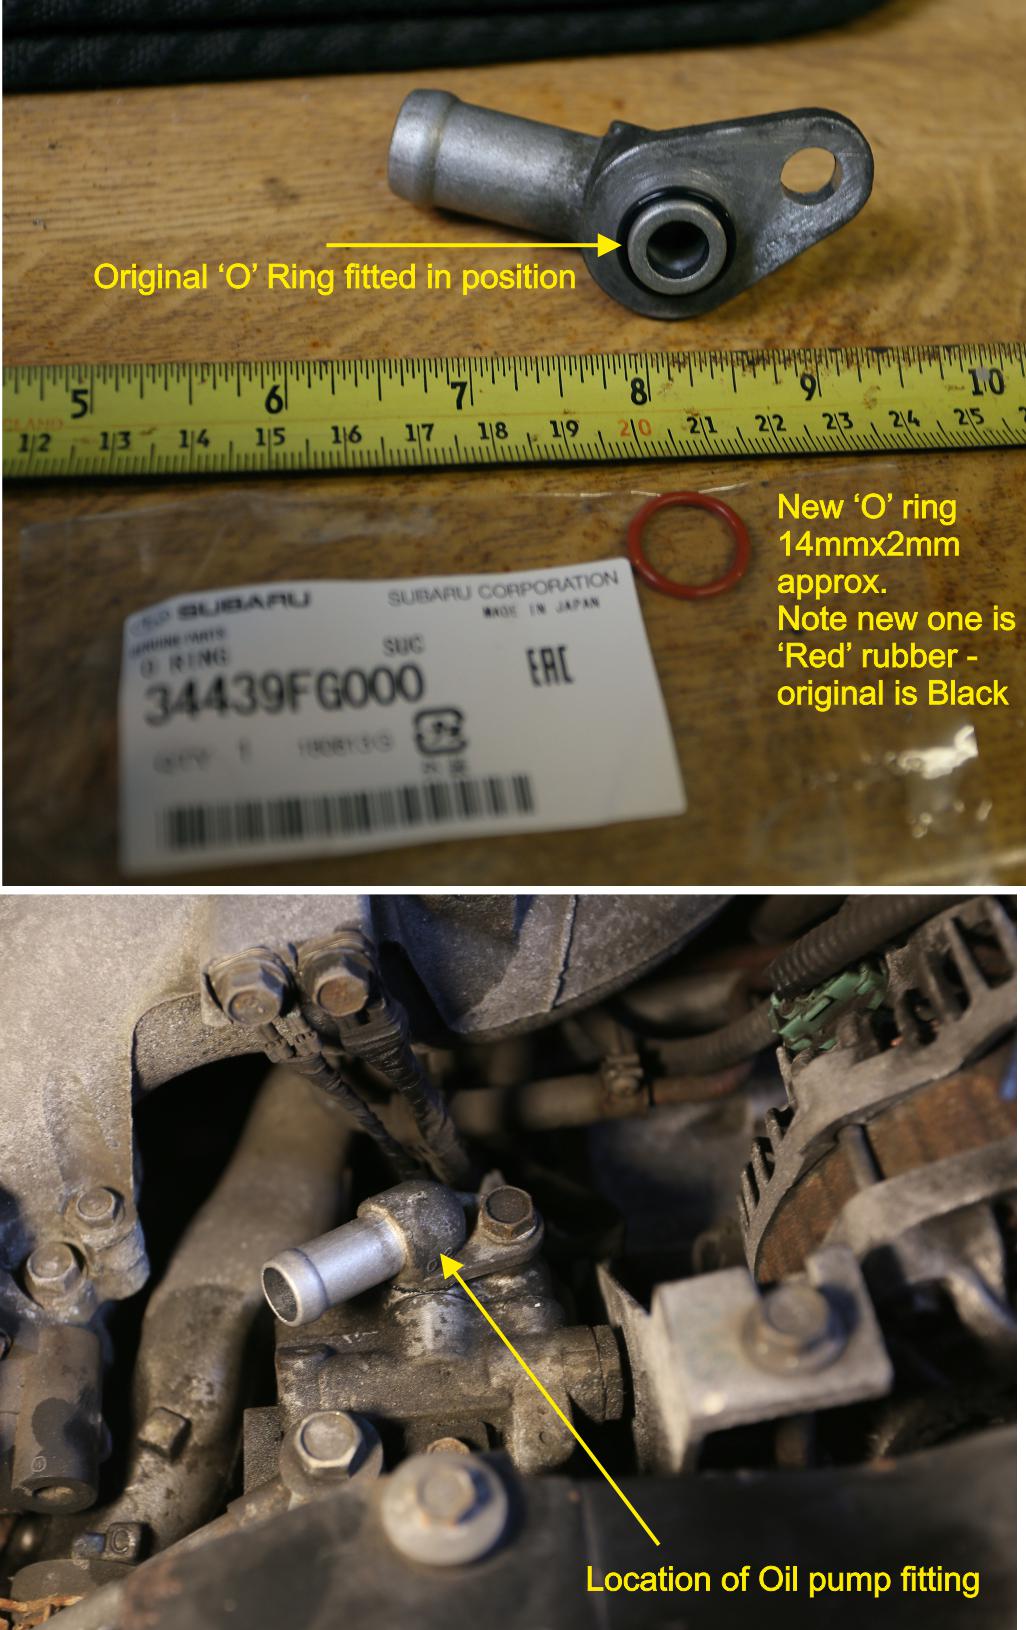 Legacy Steering - Page 1 - Subaru - PistonHeads